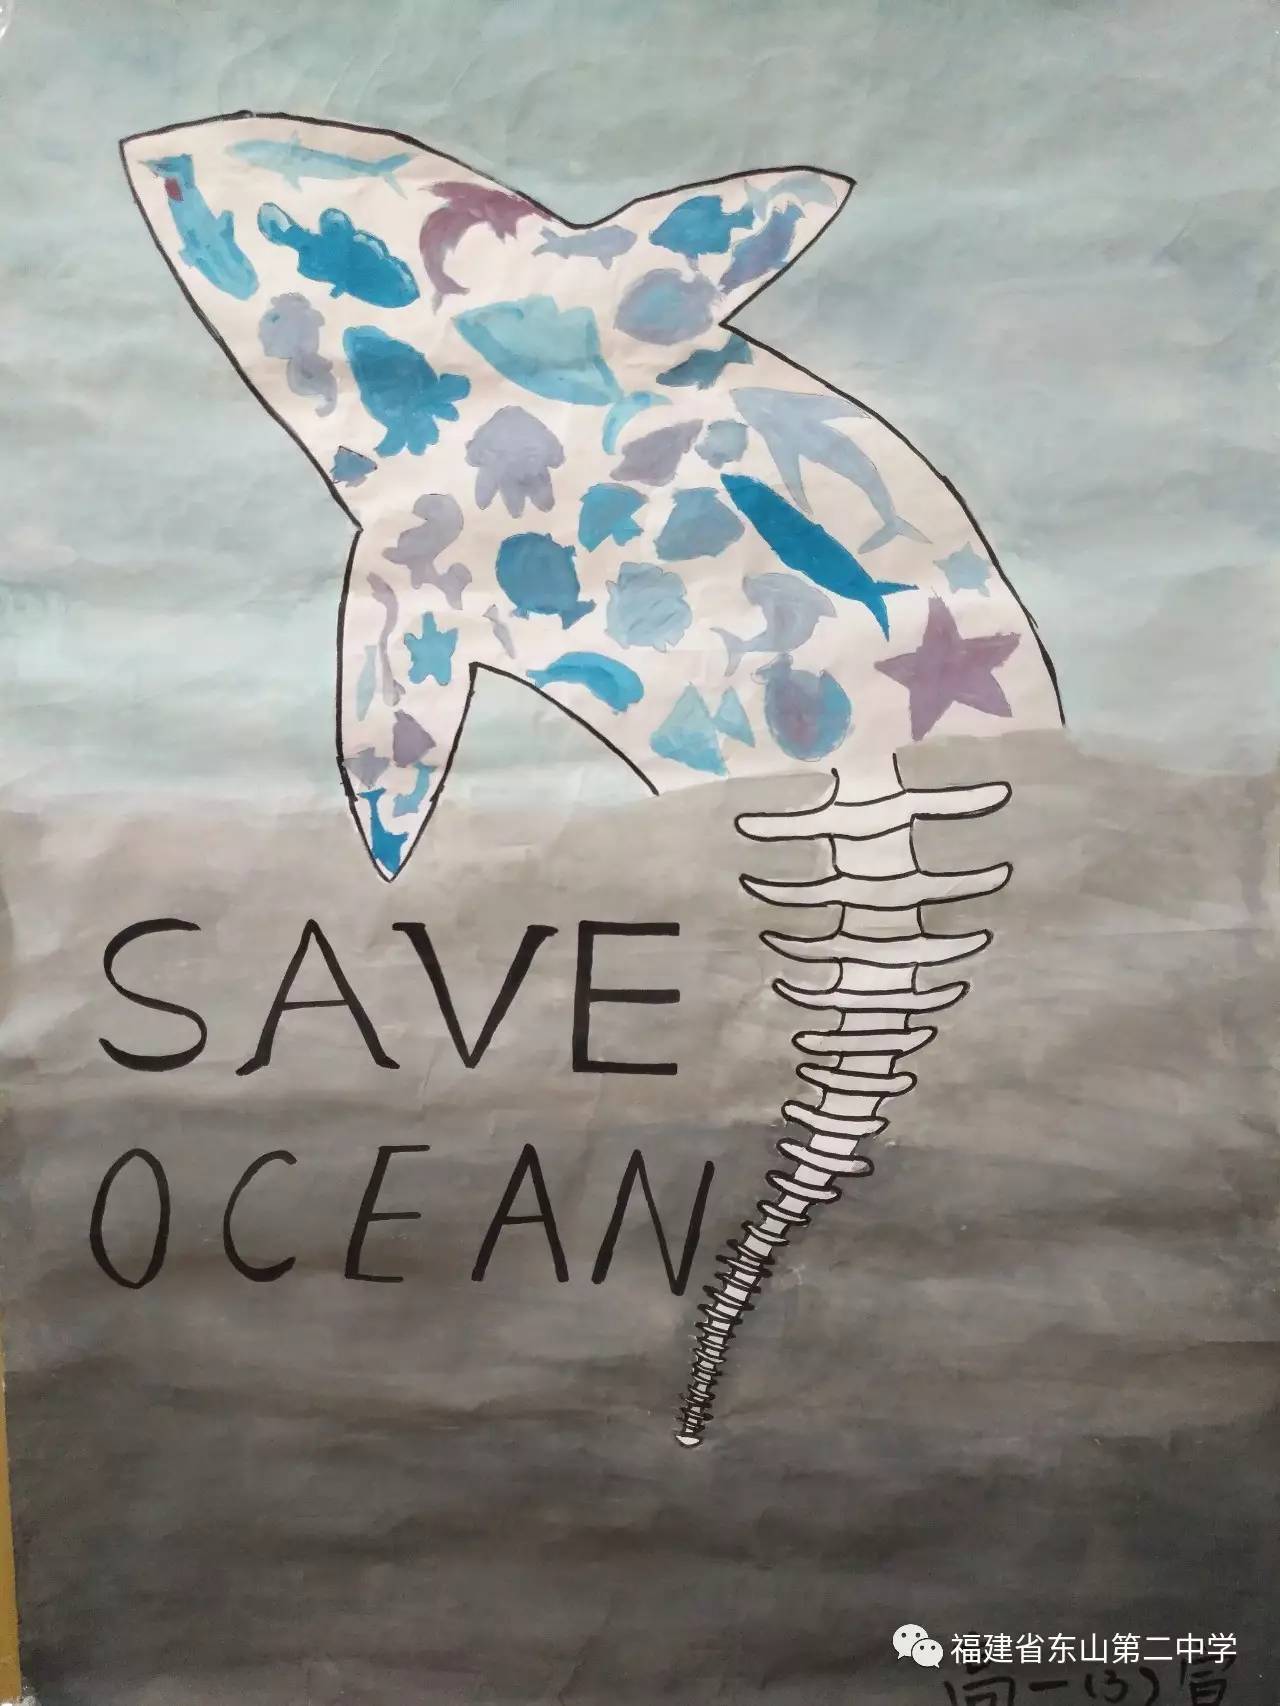 海洋意识教育东山二中海洋保护海报设计大赛邀请你投一票